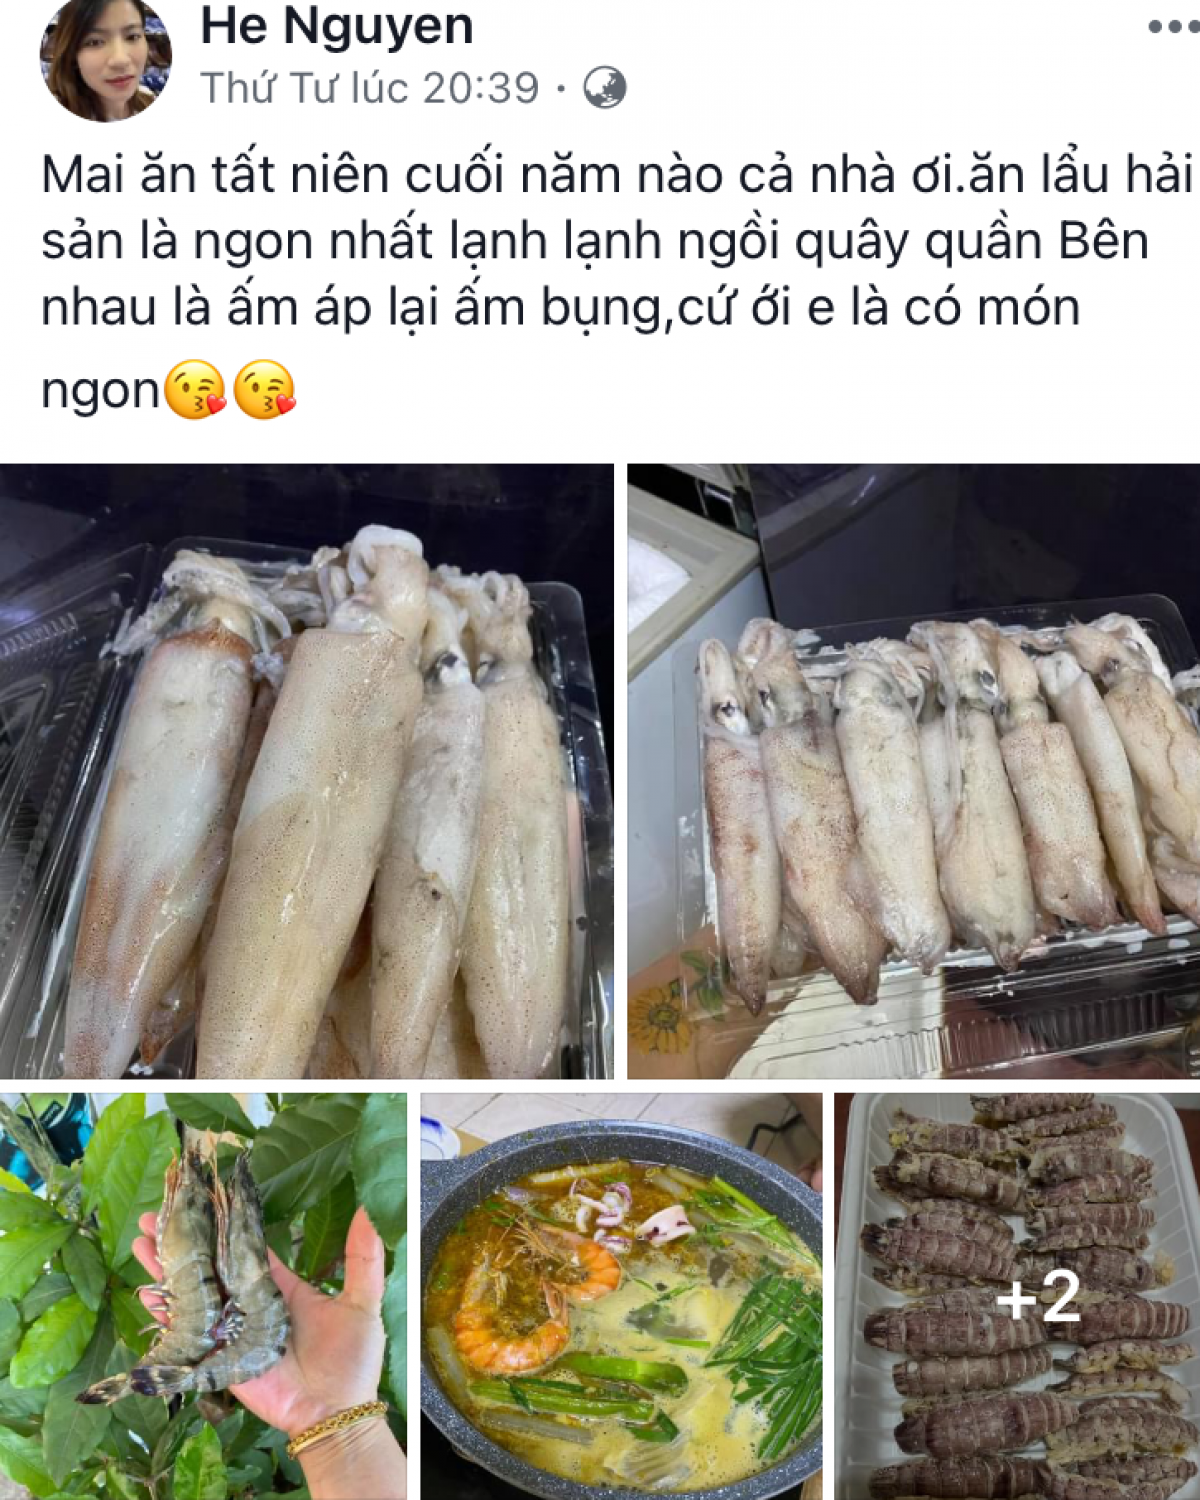 Bán hàng qua Faccebook – một cách để các tiểu thương đưa hải sản Việt sang Lào hiện nay.